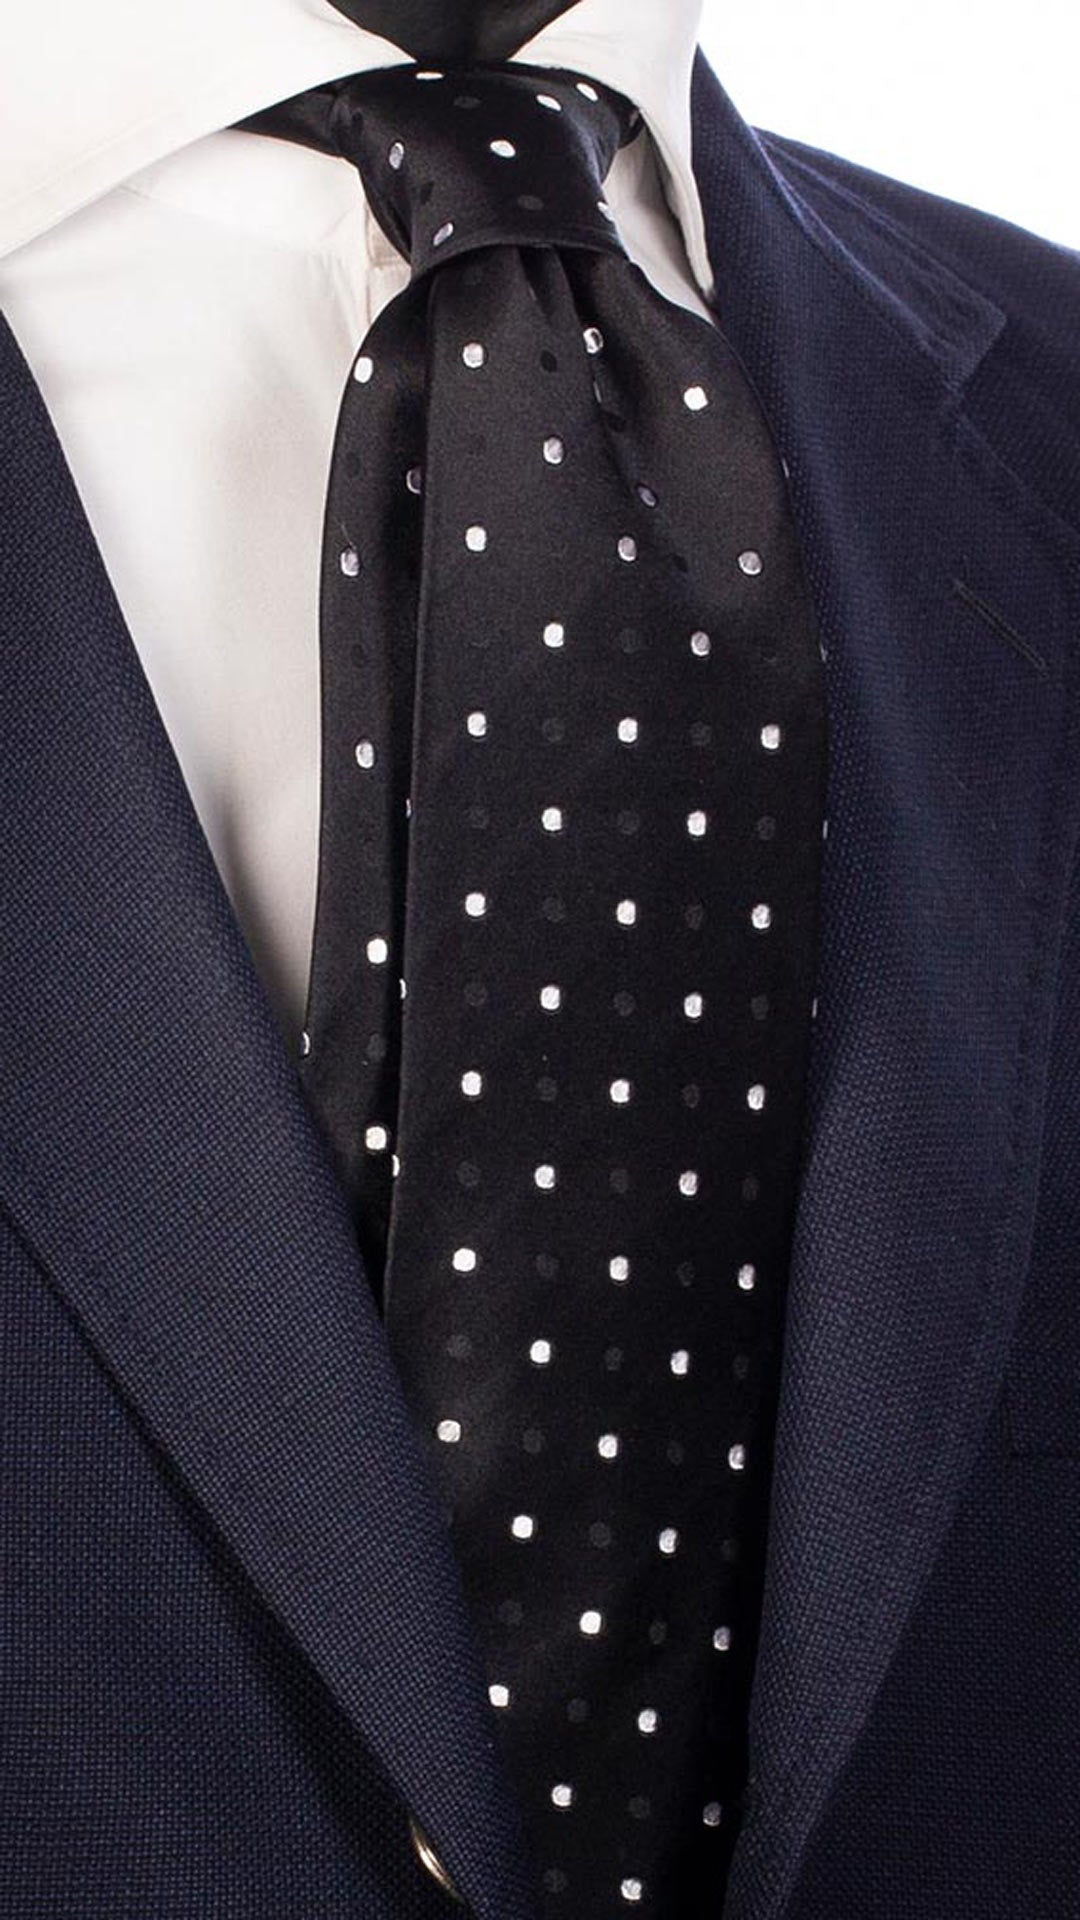 Cravatta da Cerimonia di Seta Nera a Pois Tono su Tono Bianco CY4692 Made in Italy Graffeo Cravatte